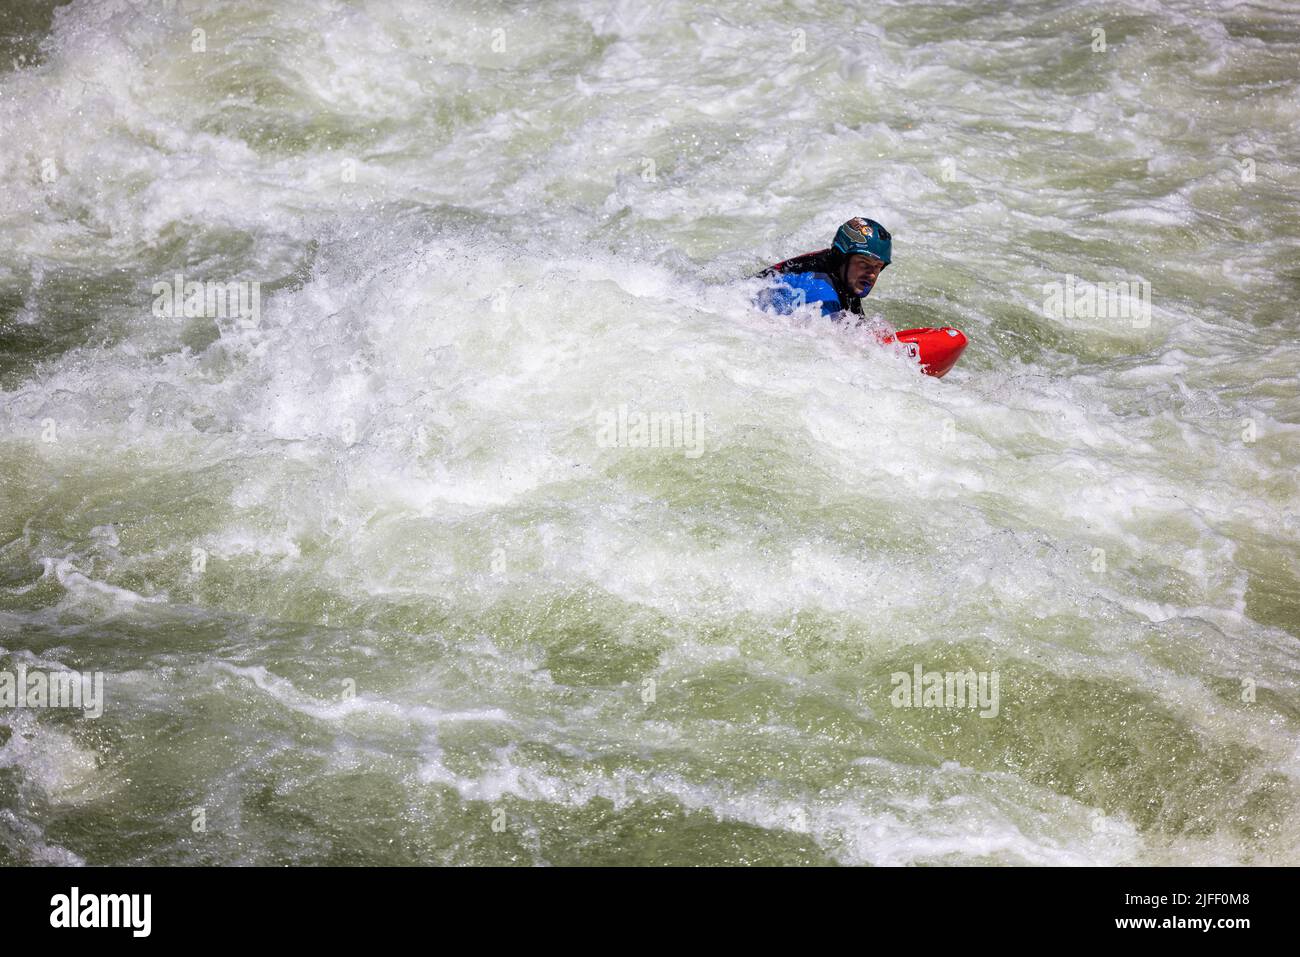 Koskia, Idaho/USA - 22 de junio de 2022: Buscadores de aventuras profesionales flotando el río Lochsa con equipo de protección y seguridad Foto de stock